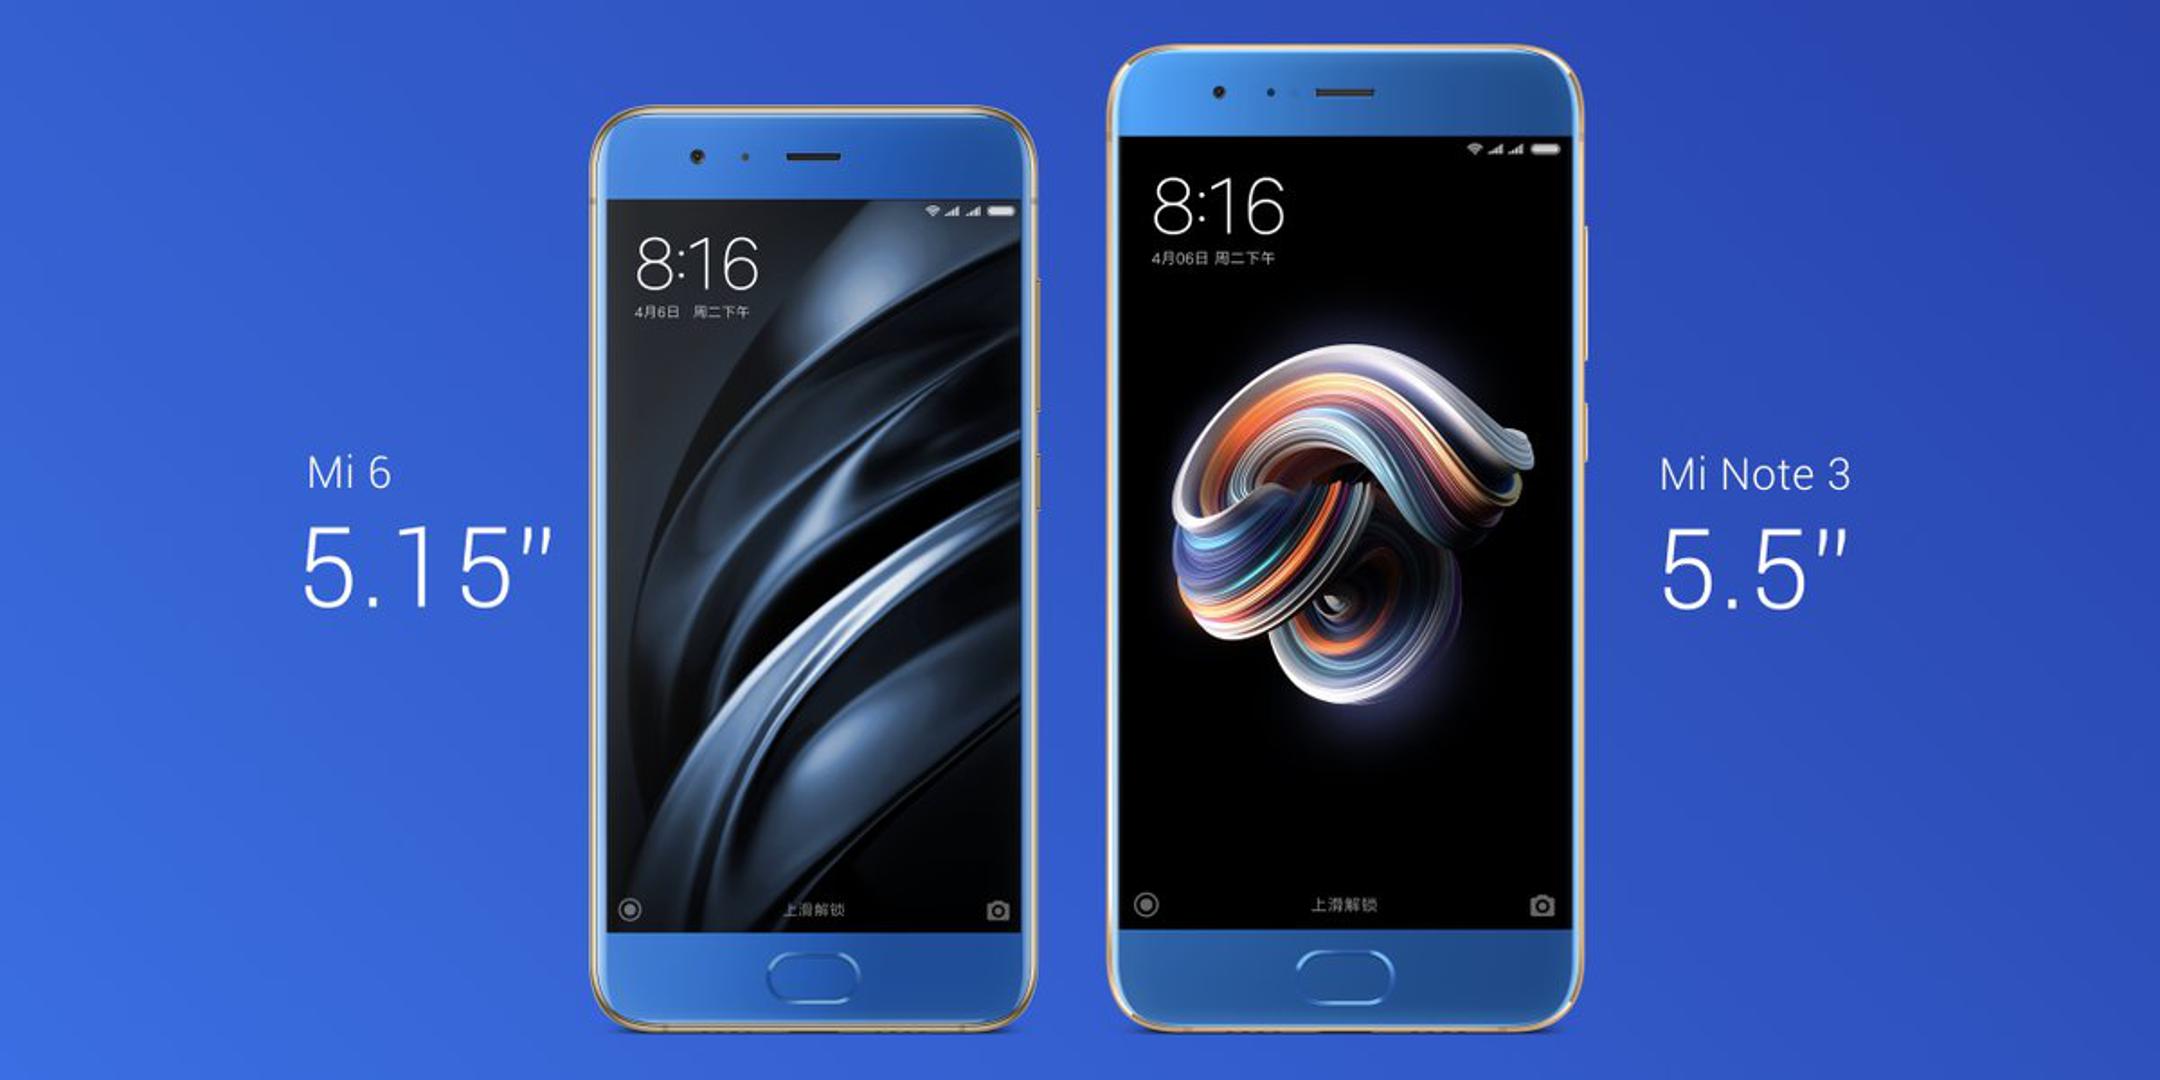 Xiaomi je jučer predstavio Mi Note 3 - smartphone koji predstavljaju kao veću verziju modela Mi 6, koji ima zaslon od 5,15 inča, dok Mi Note 3 ima 5,5.